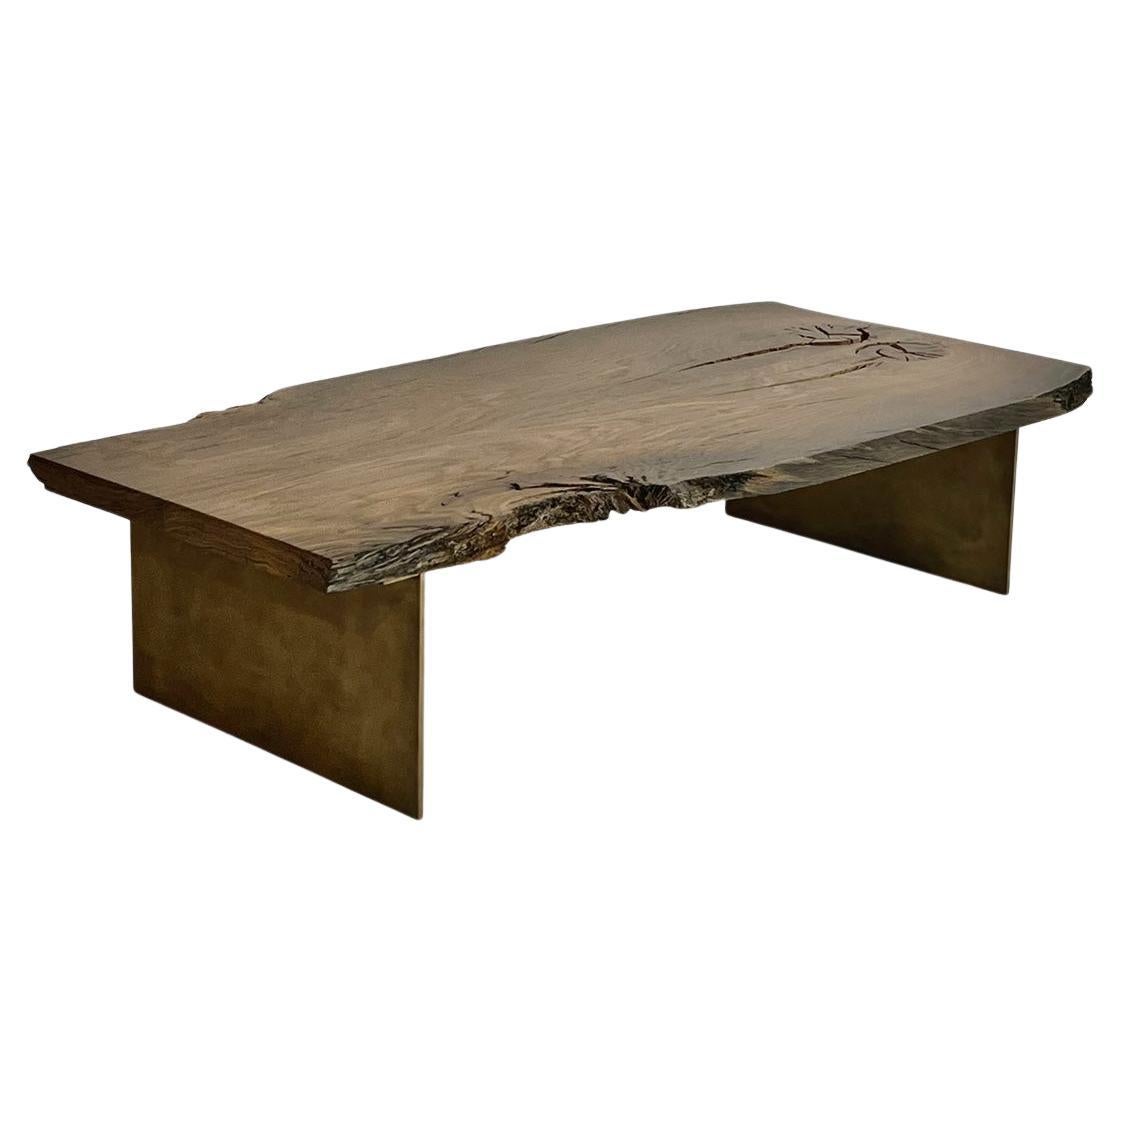 Table basse en bois, fabriquée à la main